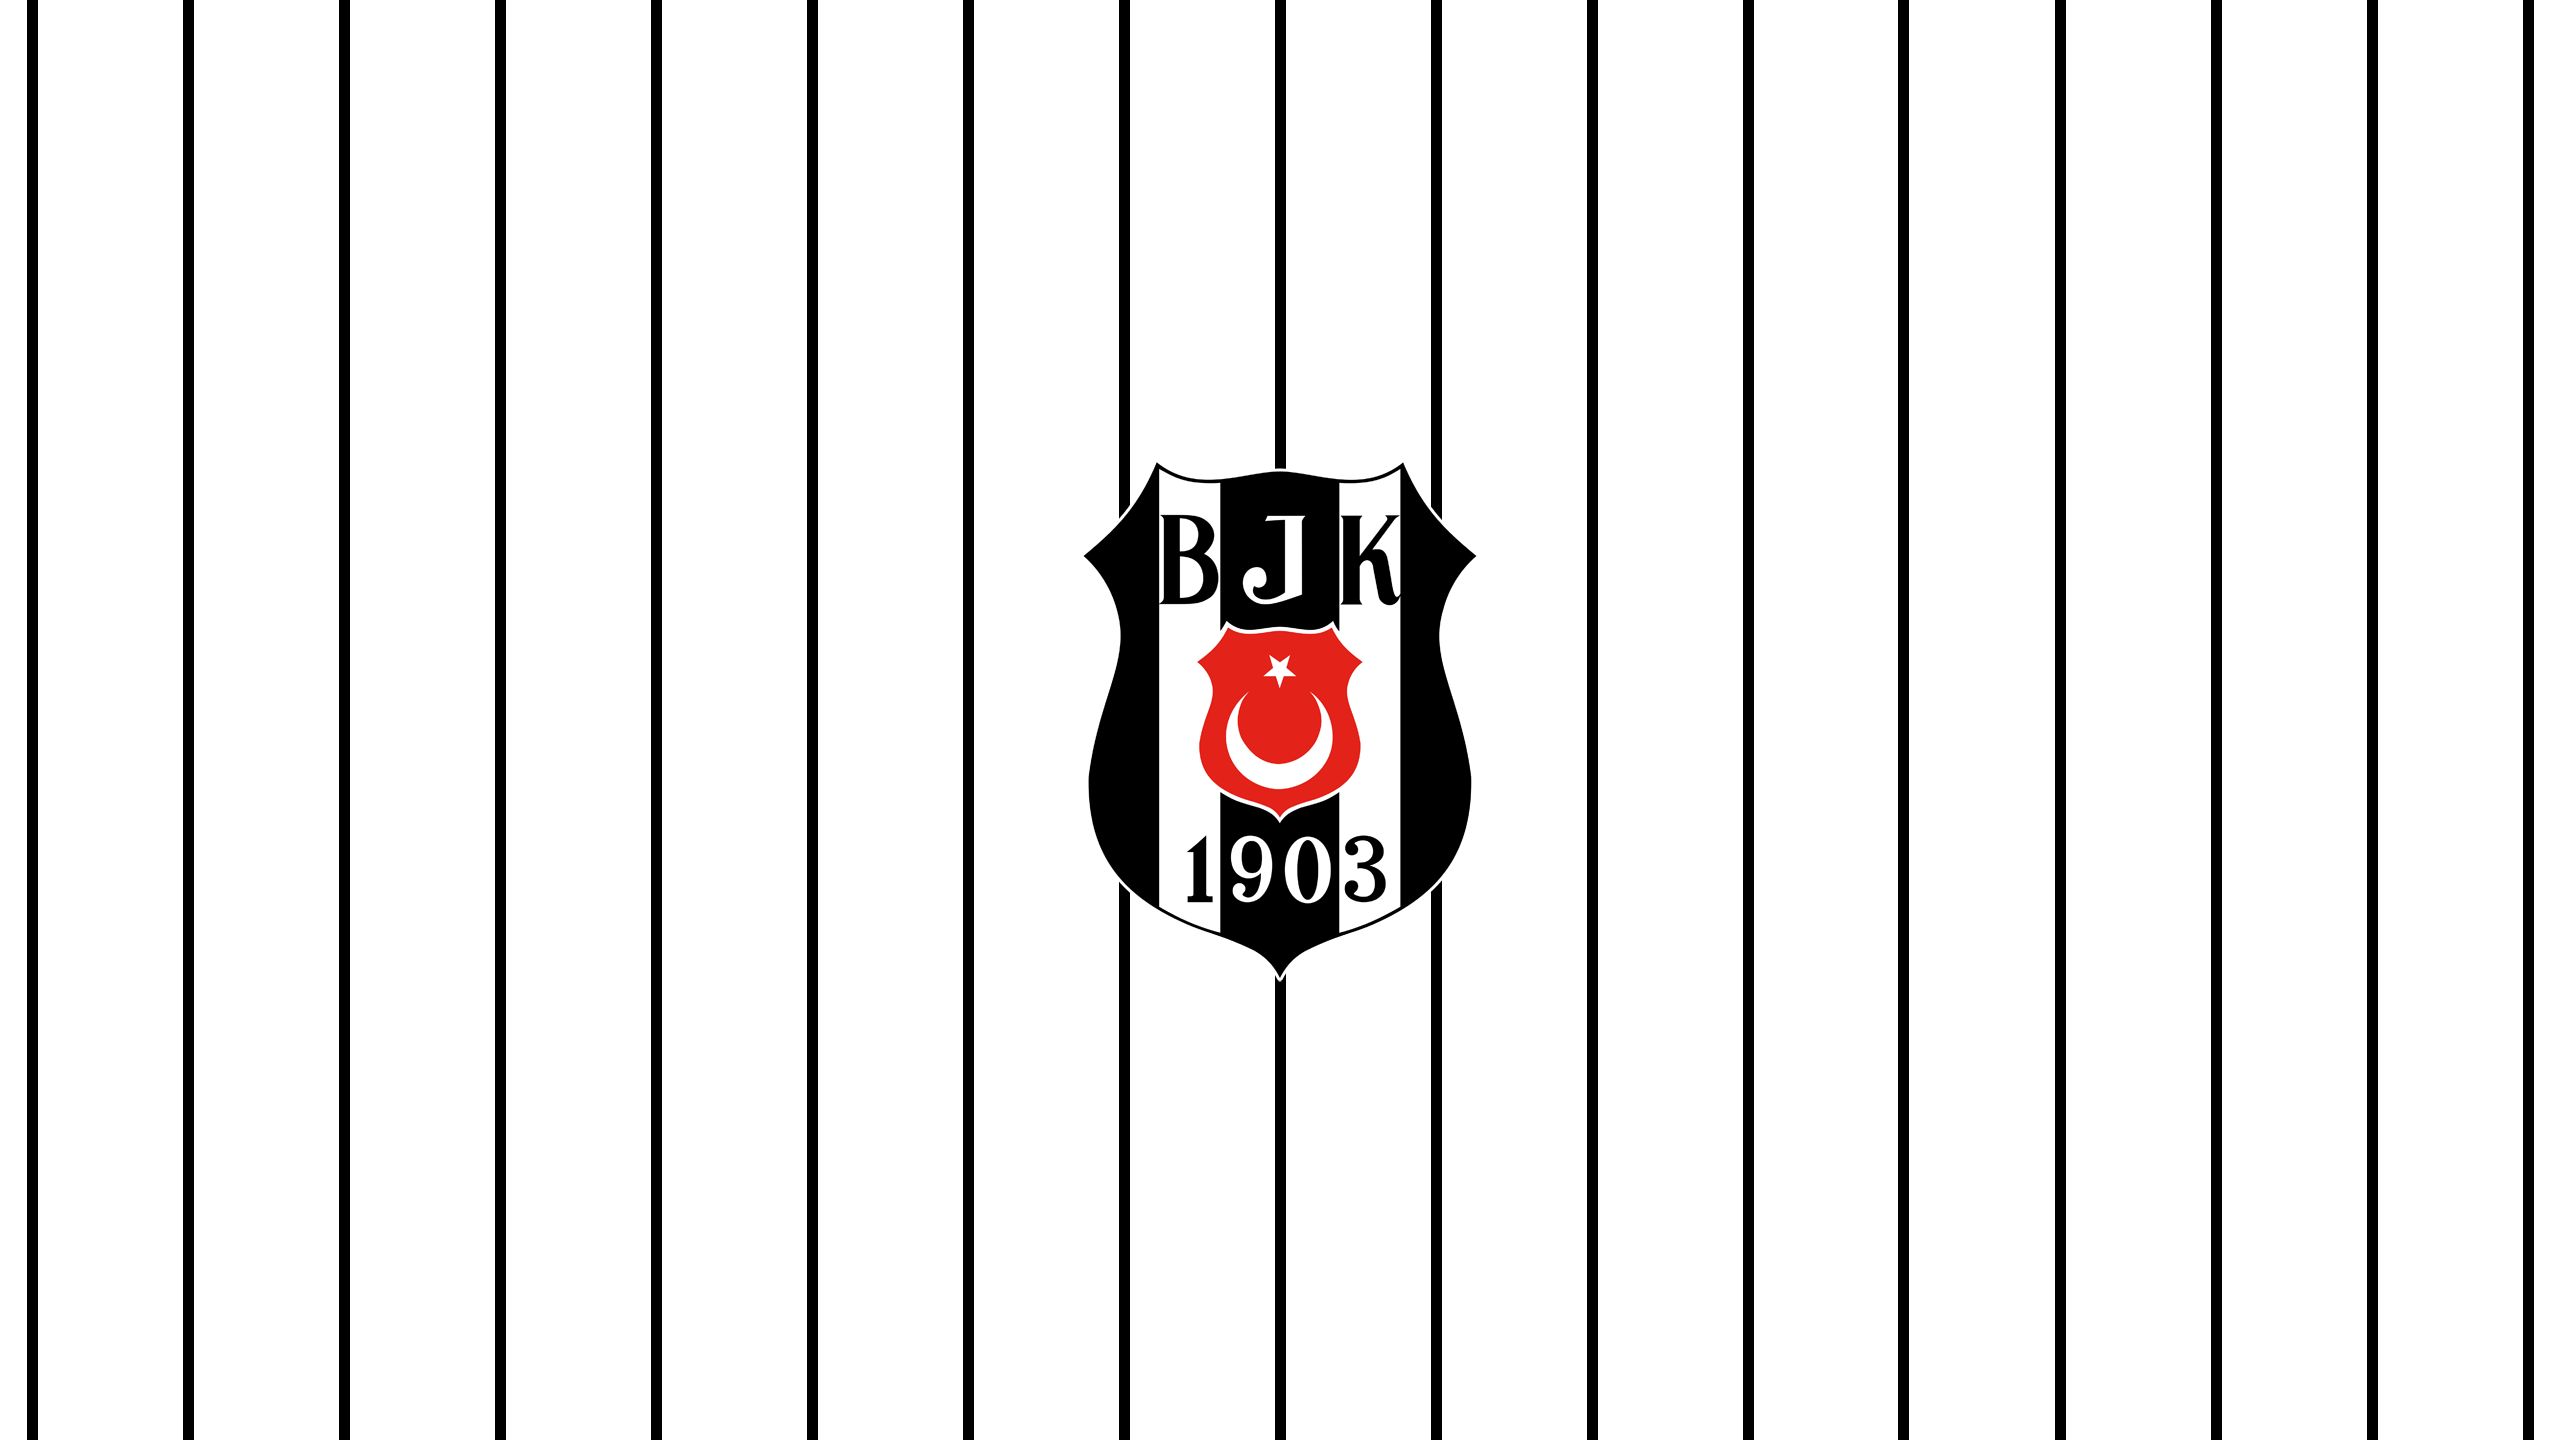 502202 descargar imagen deporte, beşiktaş j k, emblema, logo, fútbol: fondos de pantalla y protectores de pantalla gratis